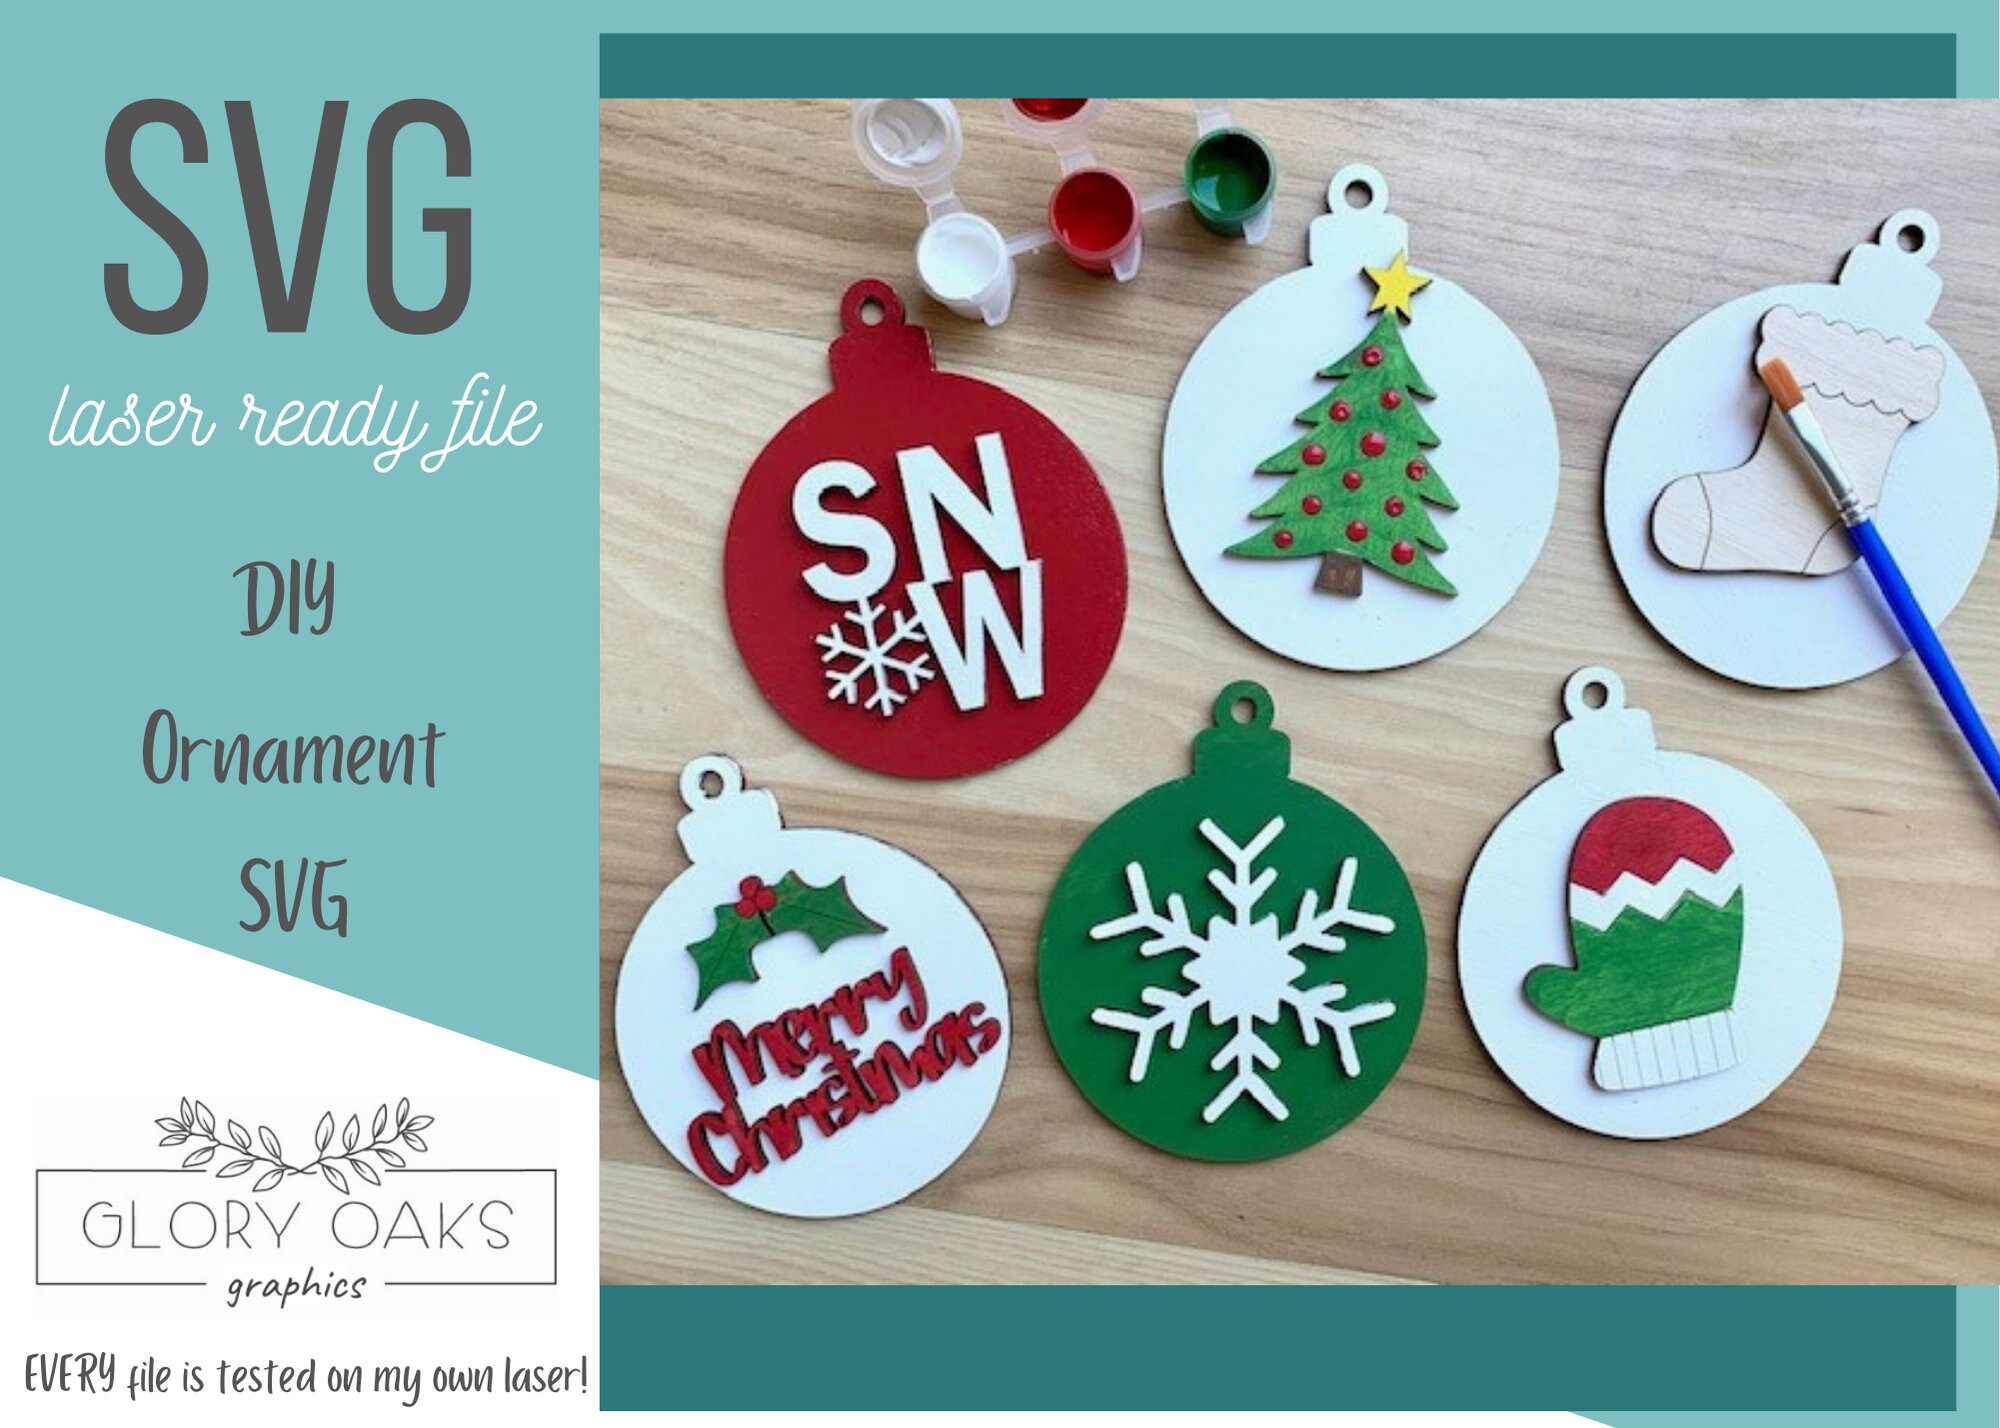 DIY Christmas Ornament Kit. Macrame Christmas Ornament Set. Christmas Craft  Kits for Adults and Kids. Macrame Star. Christmas Home Decor Diy 